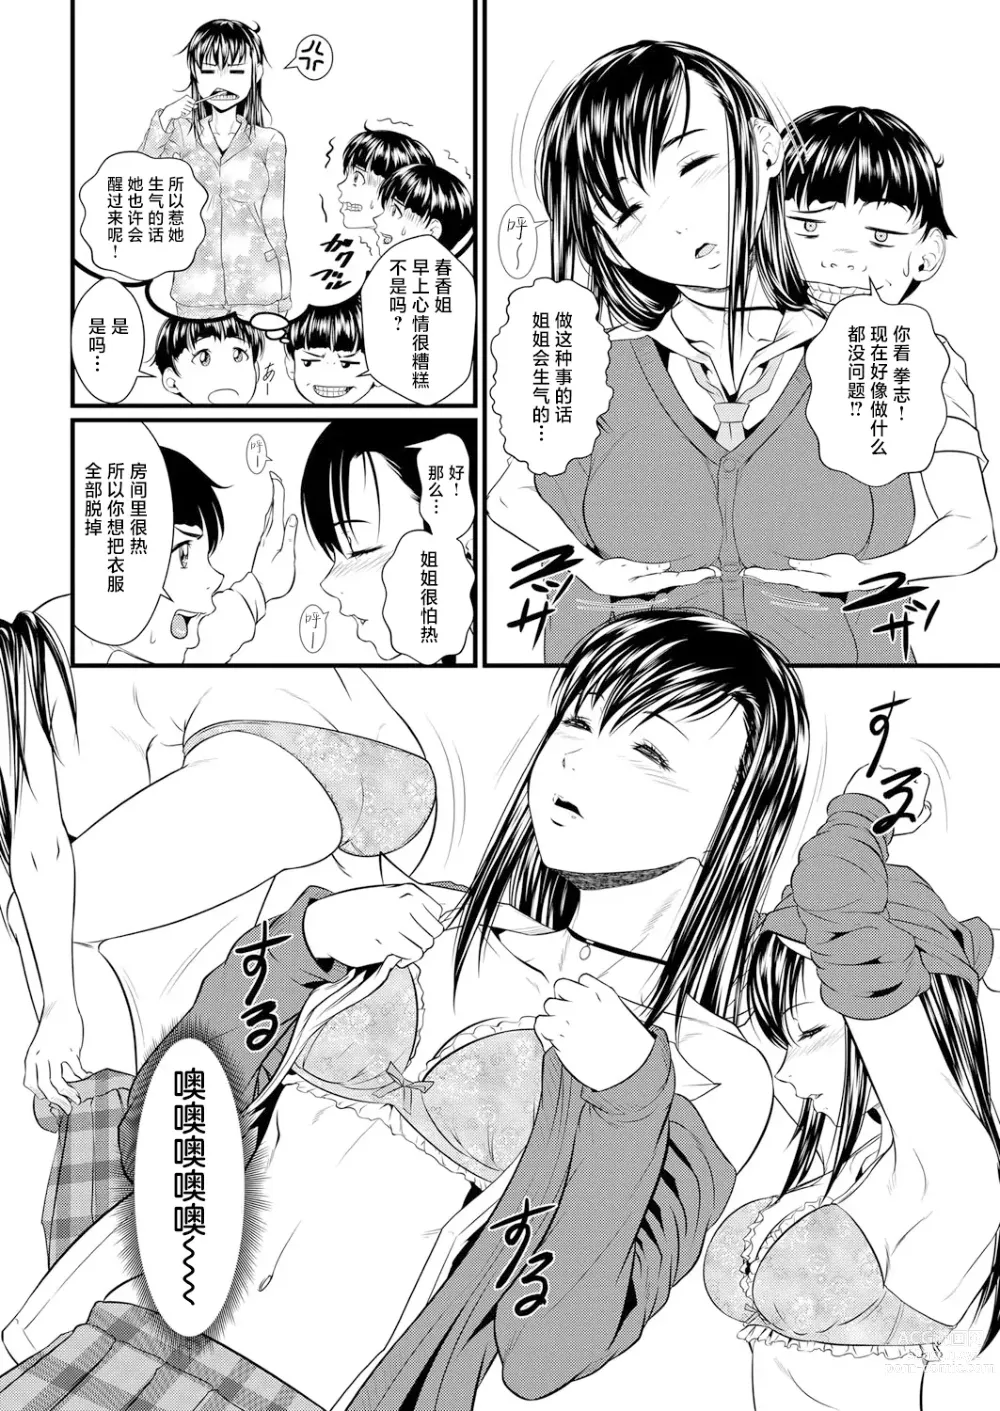 Page 10 of manga Miracle Illusion